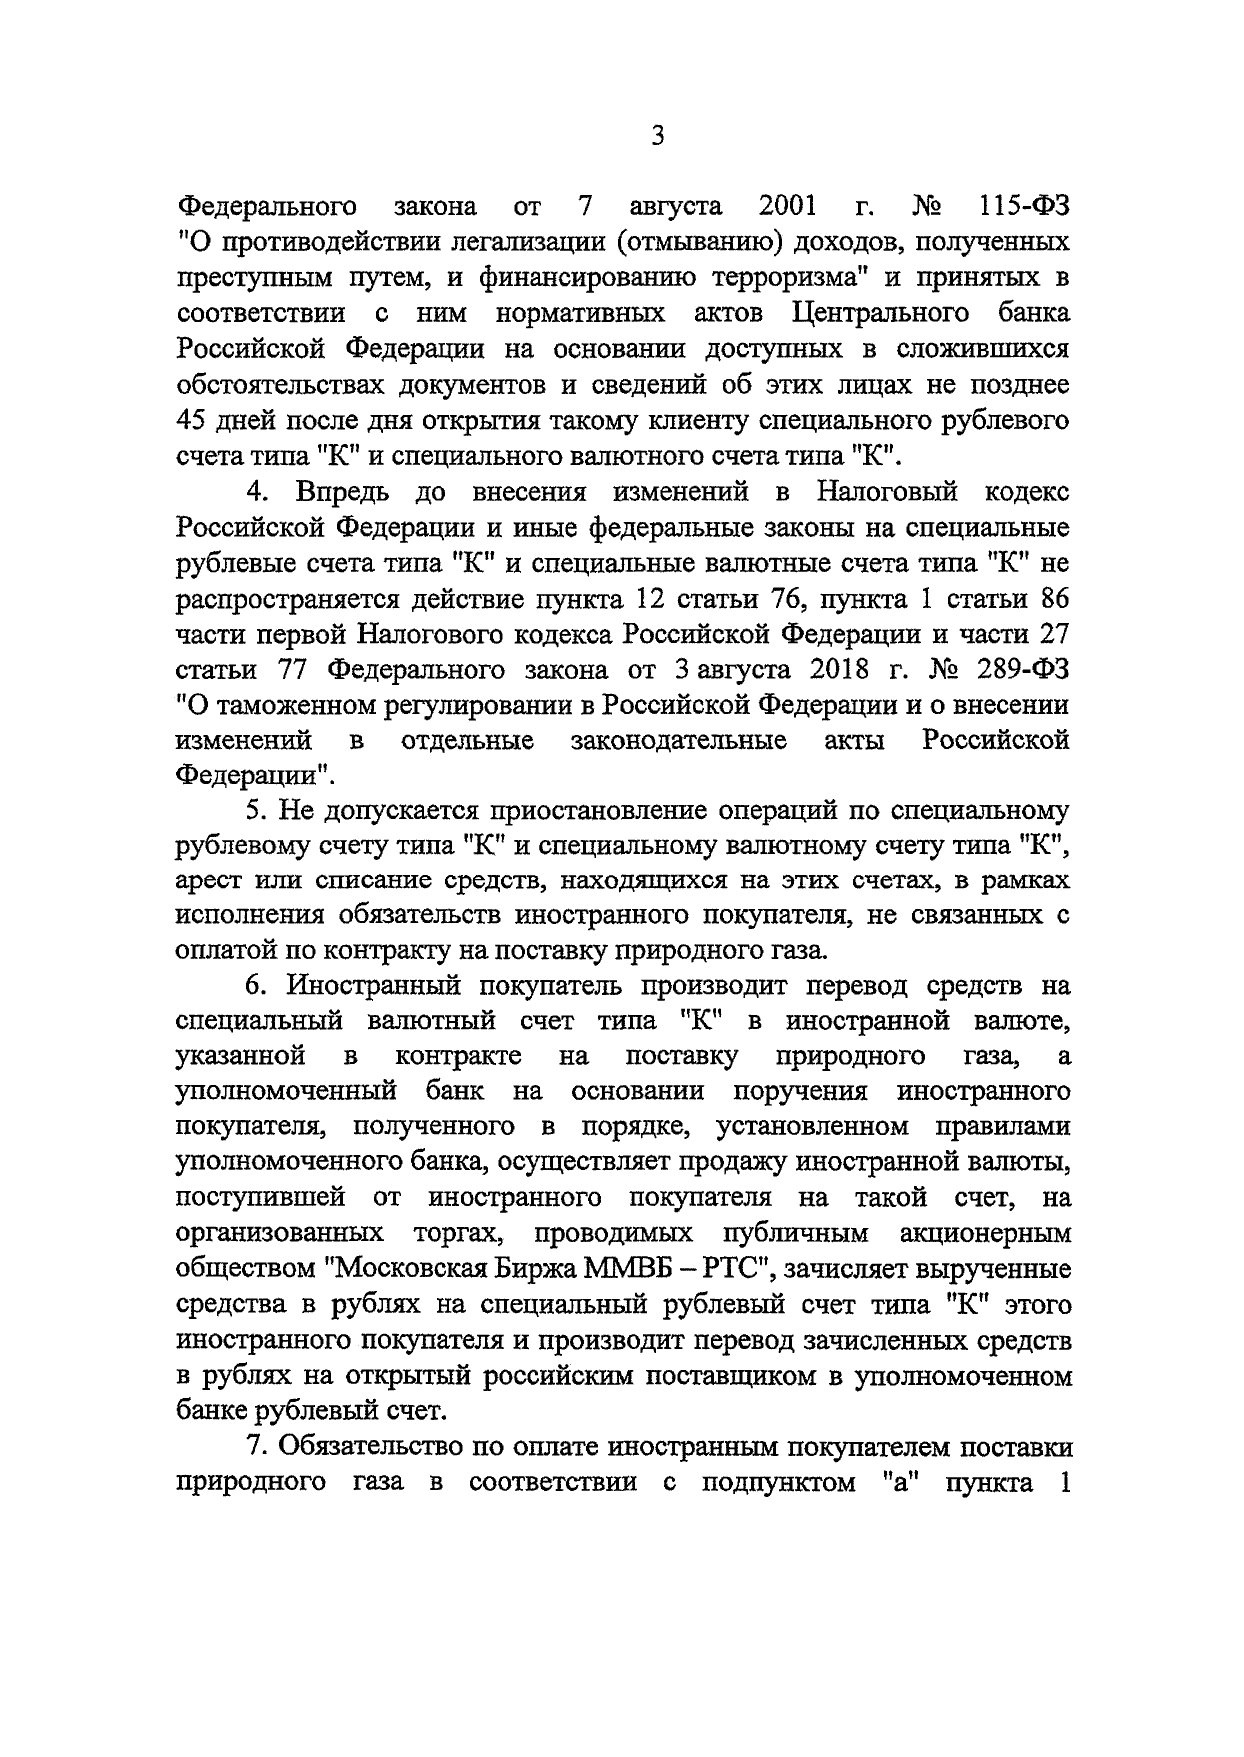 Текст Указа Путина об оплате газа в рублях - Указ Президента РФ № 172 от 31.03.2022 г. о торговле, продаже, расчётах за газ в рублях 3